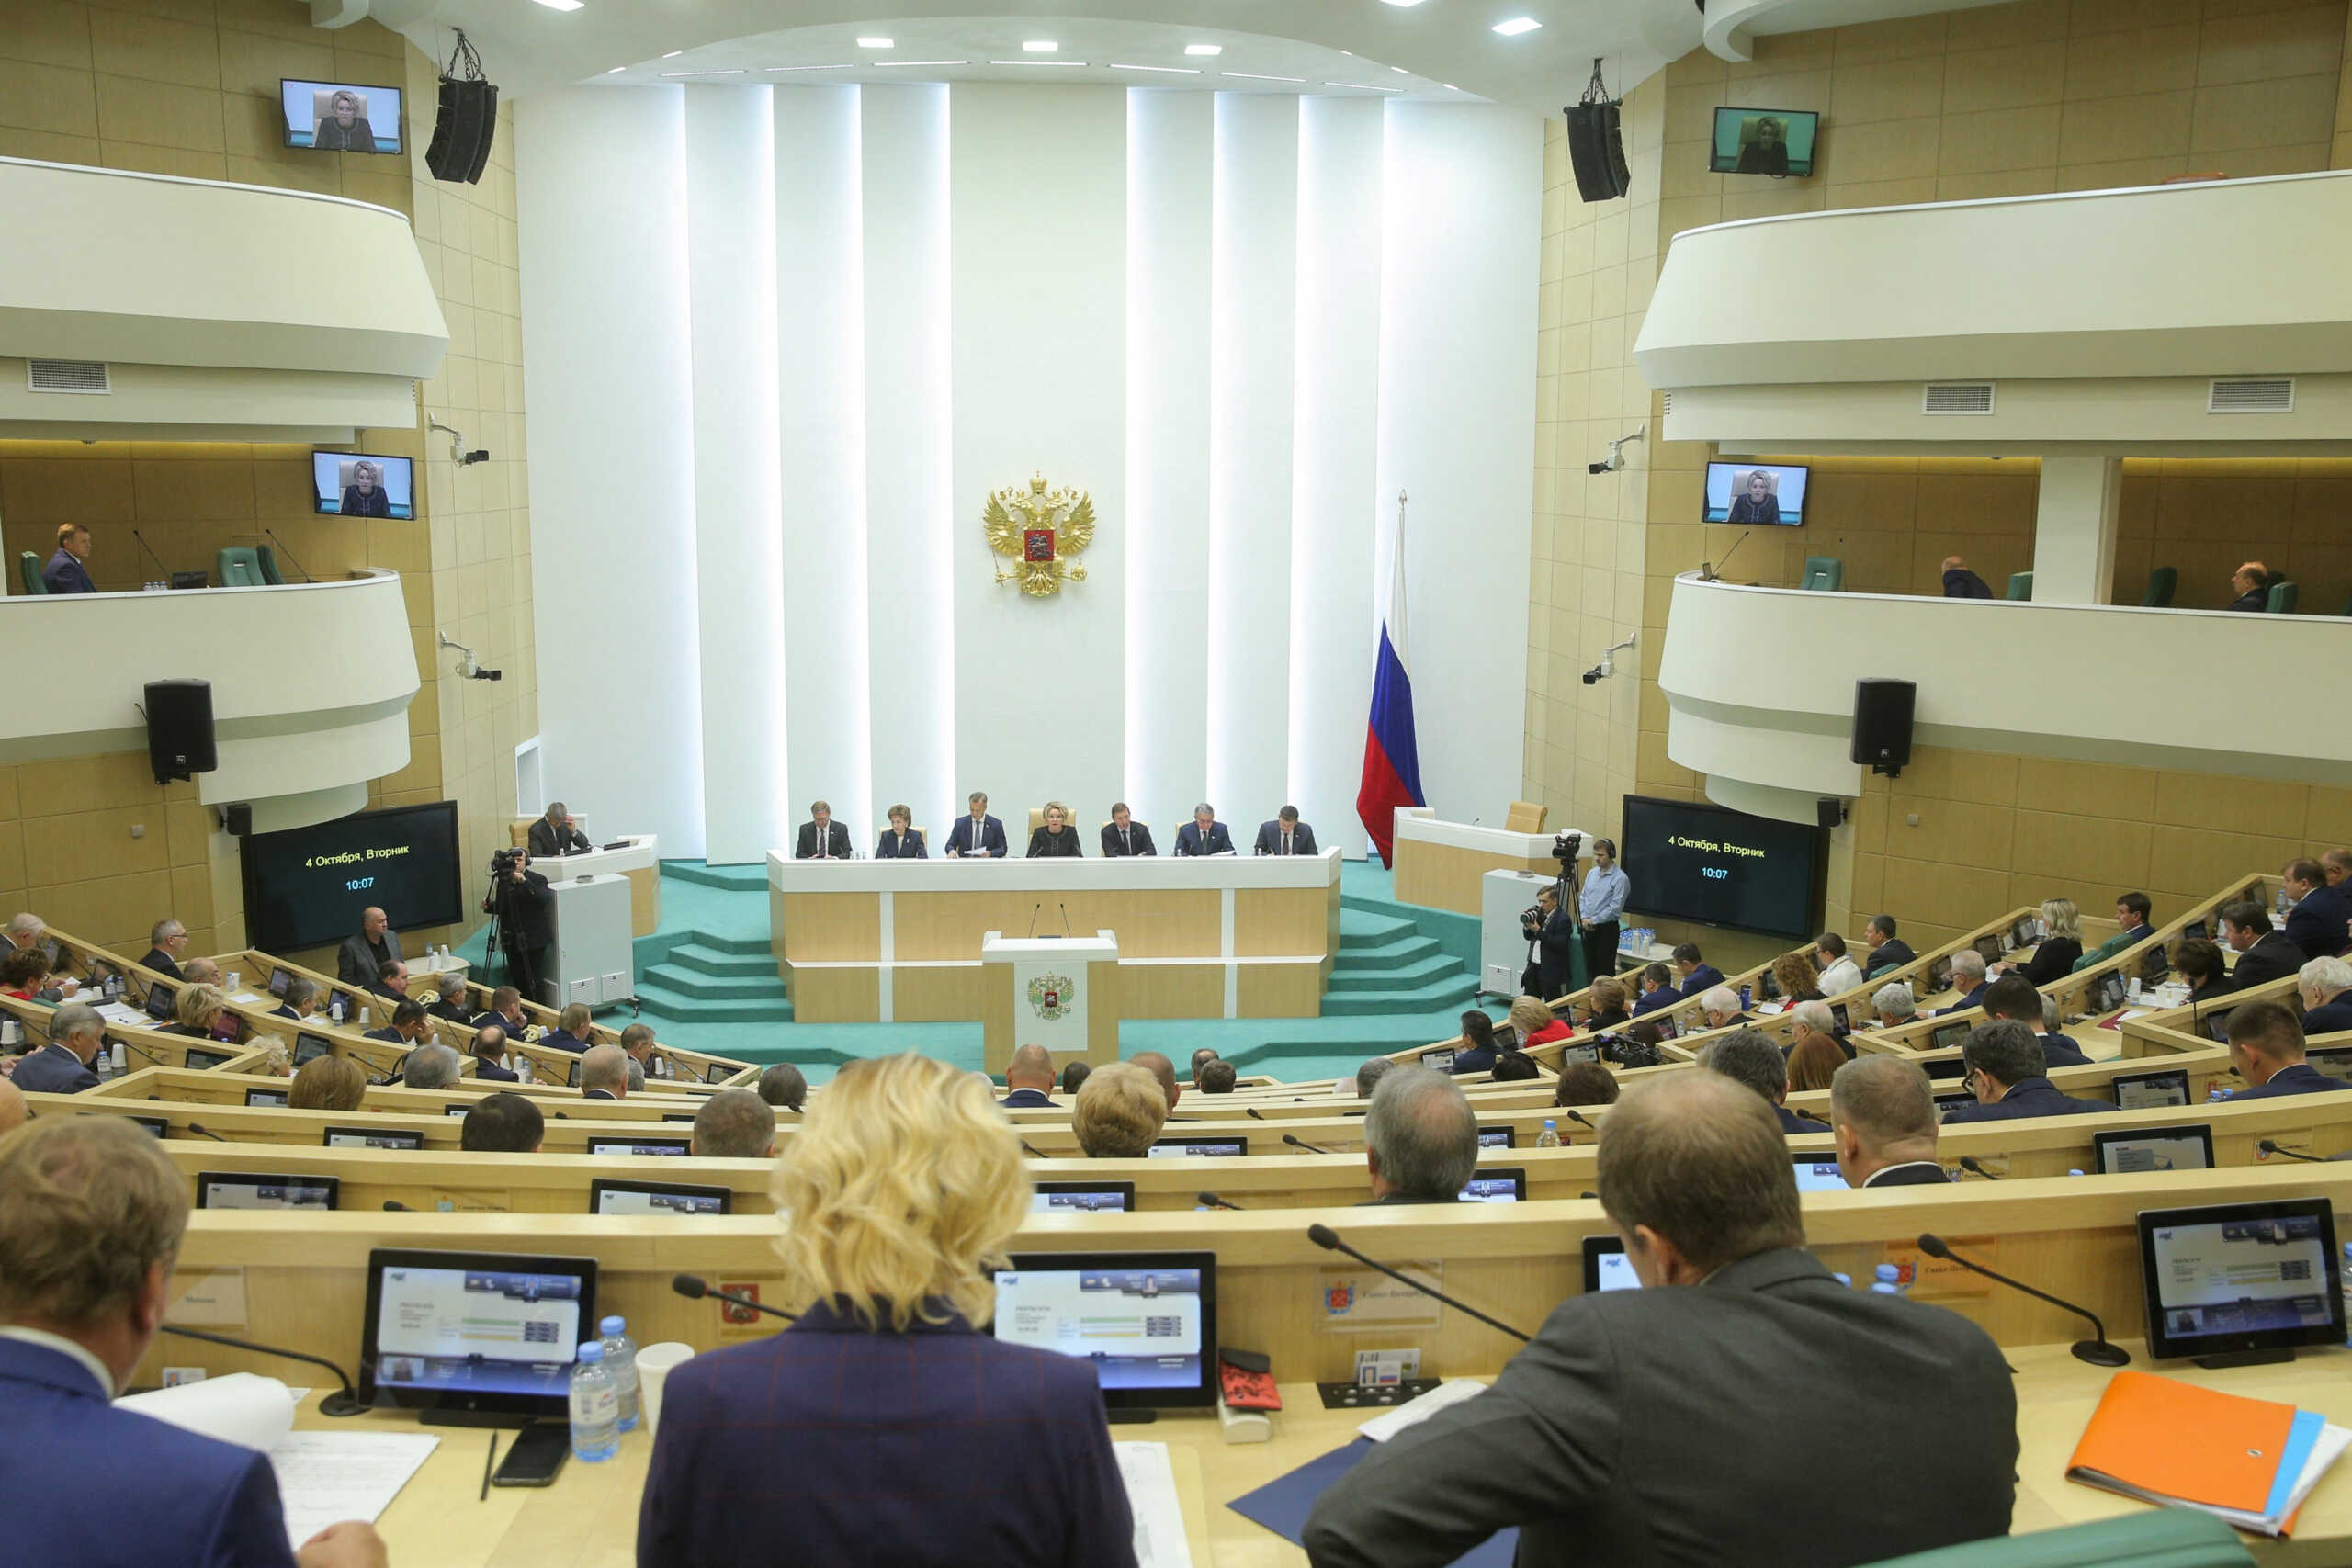 Ρωσία: Το κοινοβούλιο ενέκρινε την προσάρτηση των 4 περιοχών της Ουκρανίας